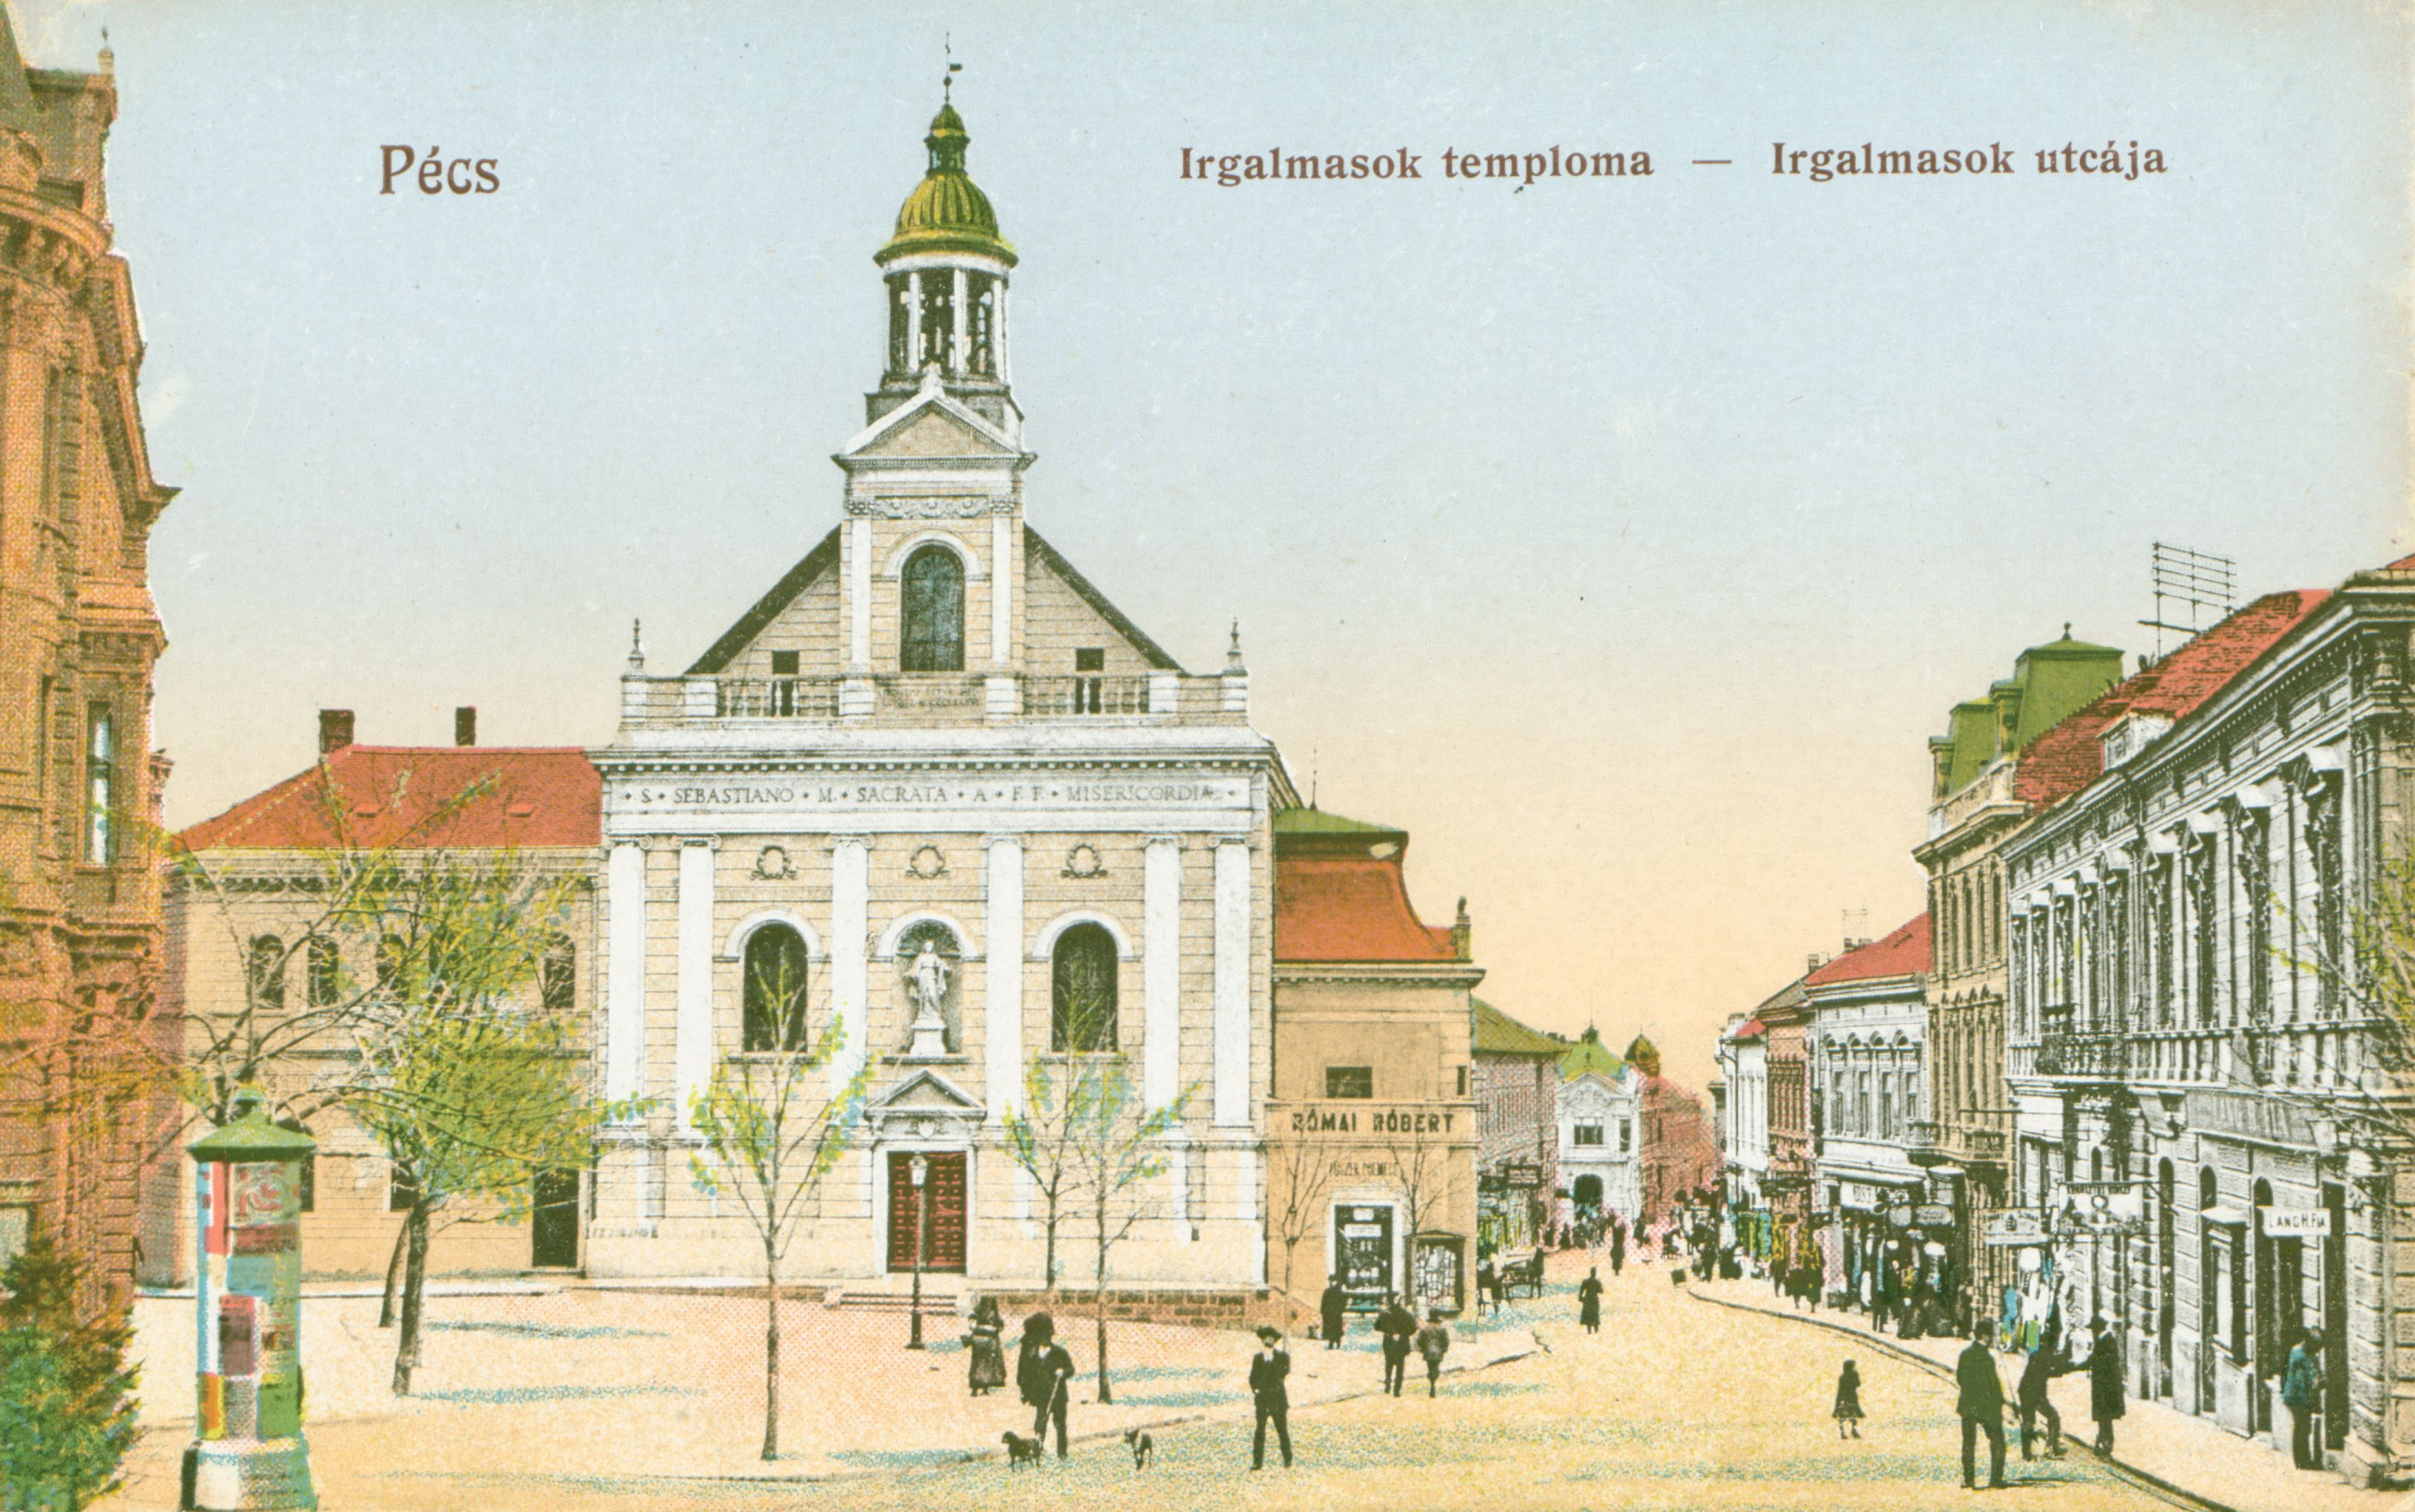 Pécs Irgalmasok temploma - Irgalmasok utcája